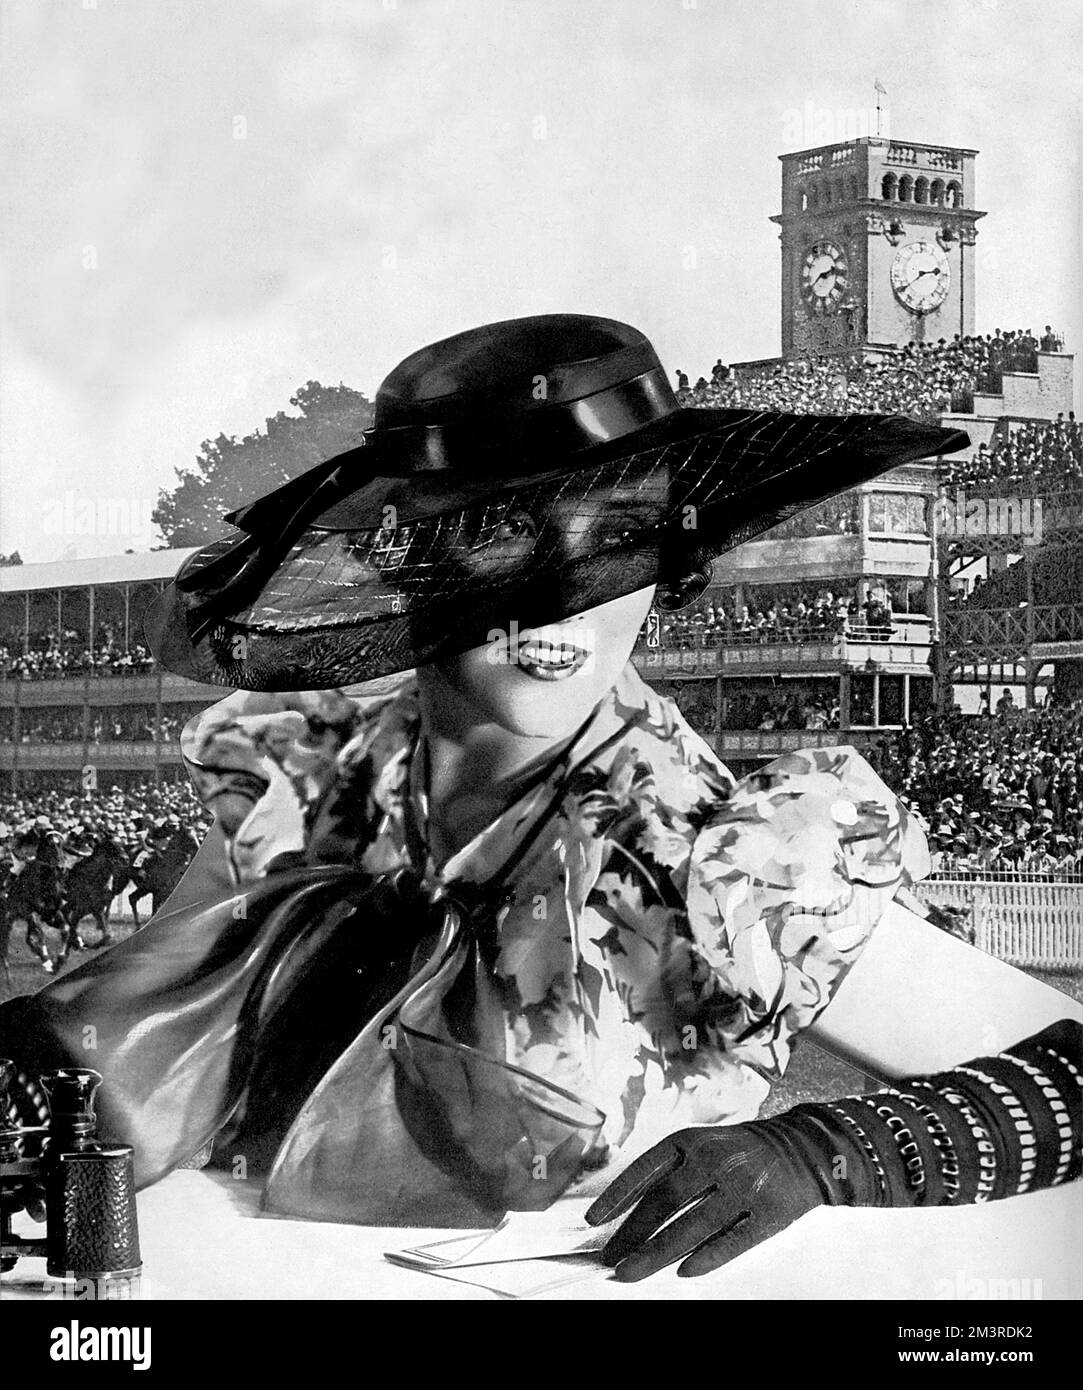 Un superbe chapeau d'organdie dans 'une nuance insaisissable de brun'; le bord renforcé dans une insertion de treillis ouverte dans laquelle les fils dorés se mêlent à l'organdie. Parfait pour la fête des femmes au Royal Ascot. 1934 Banque D'Images